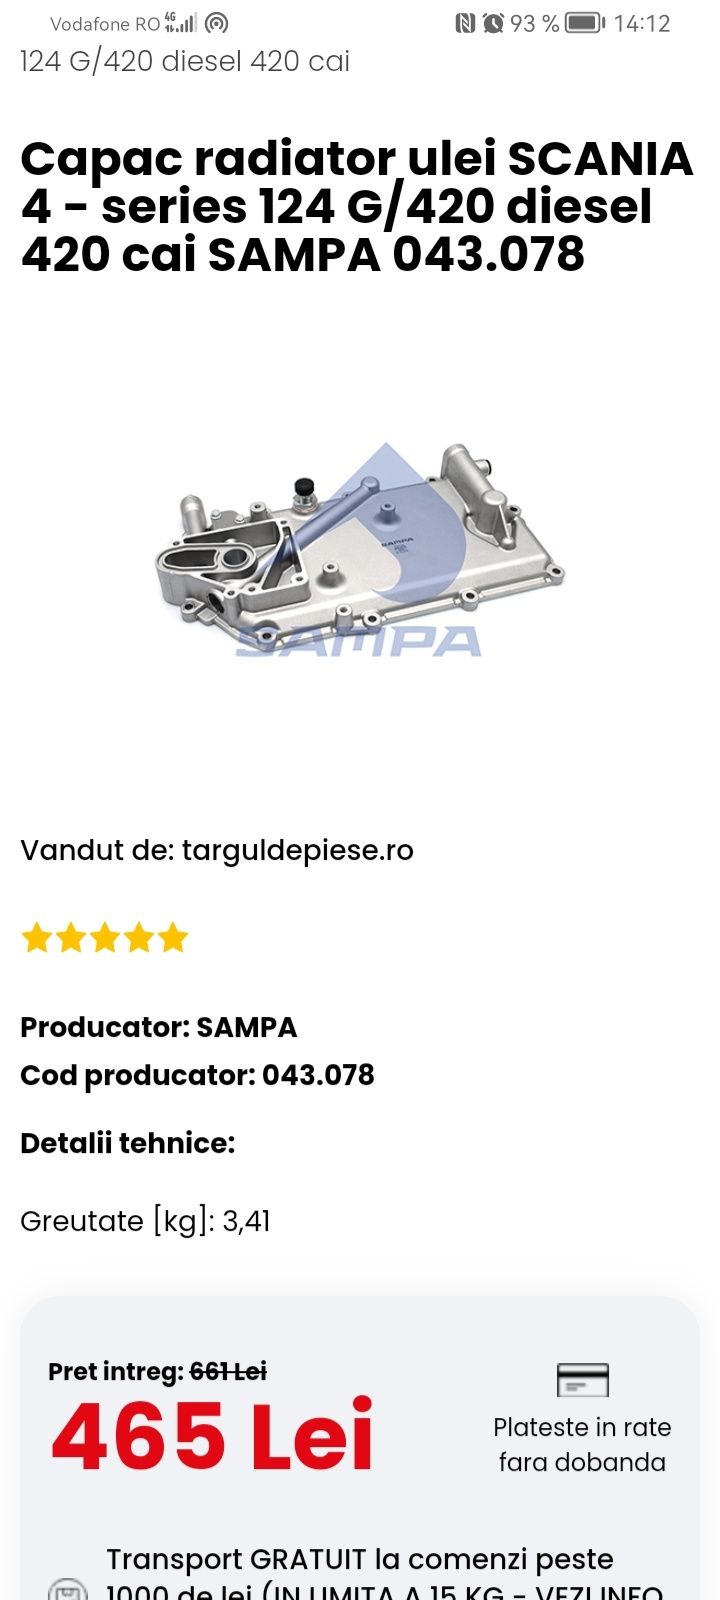 Scania injectoare. 
Injectoare Scania.  
Cod 1478643.
Cod 039969.
Cod